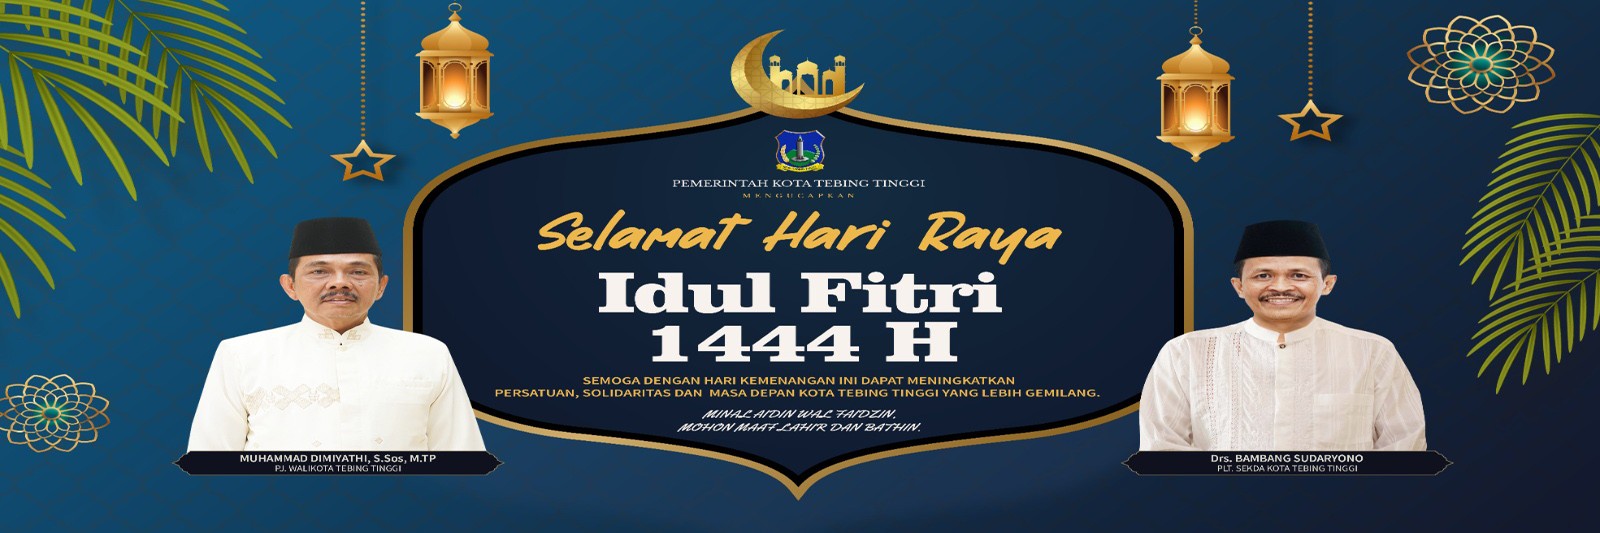 Idul Fitri 1444 H